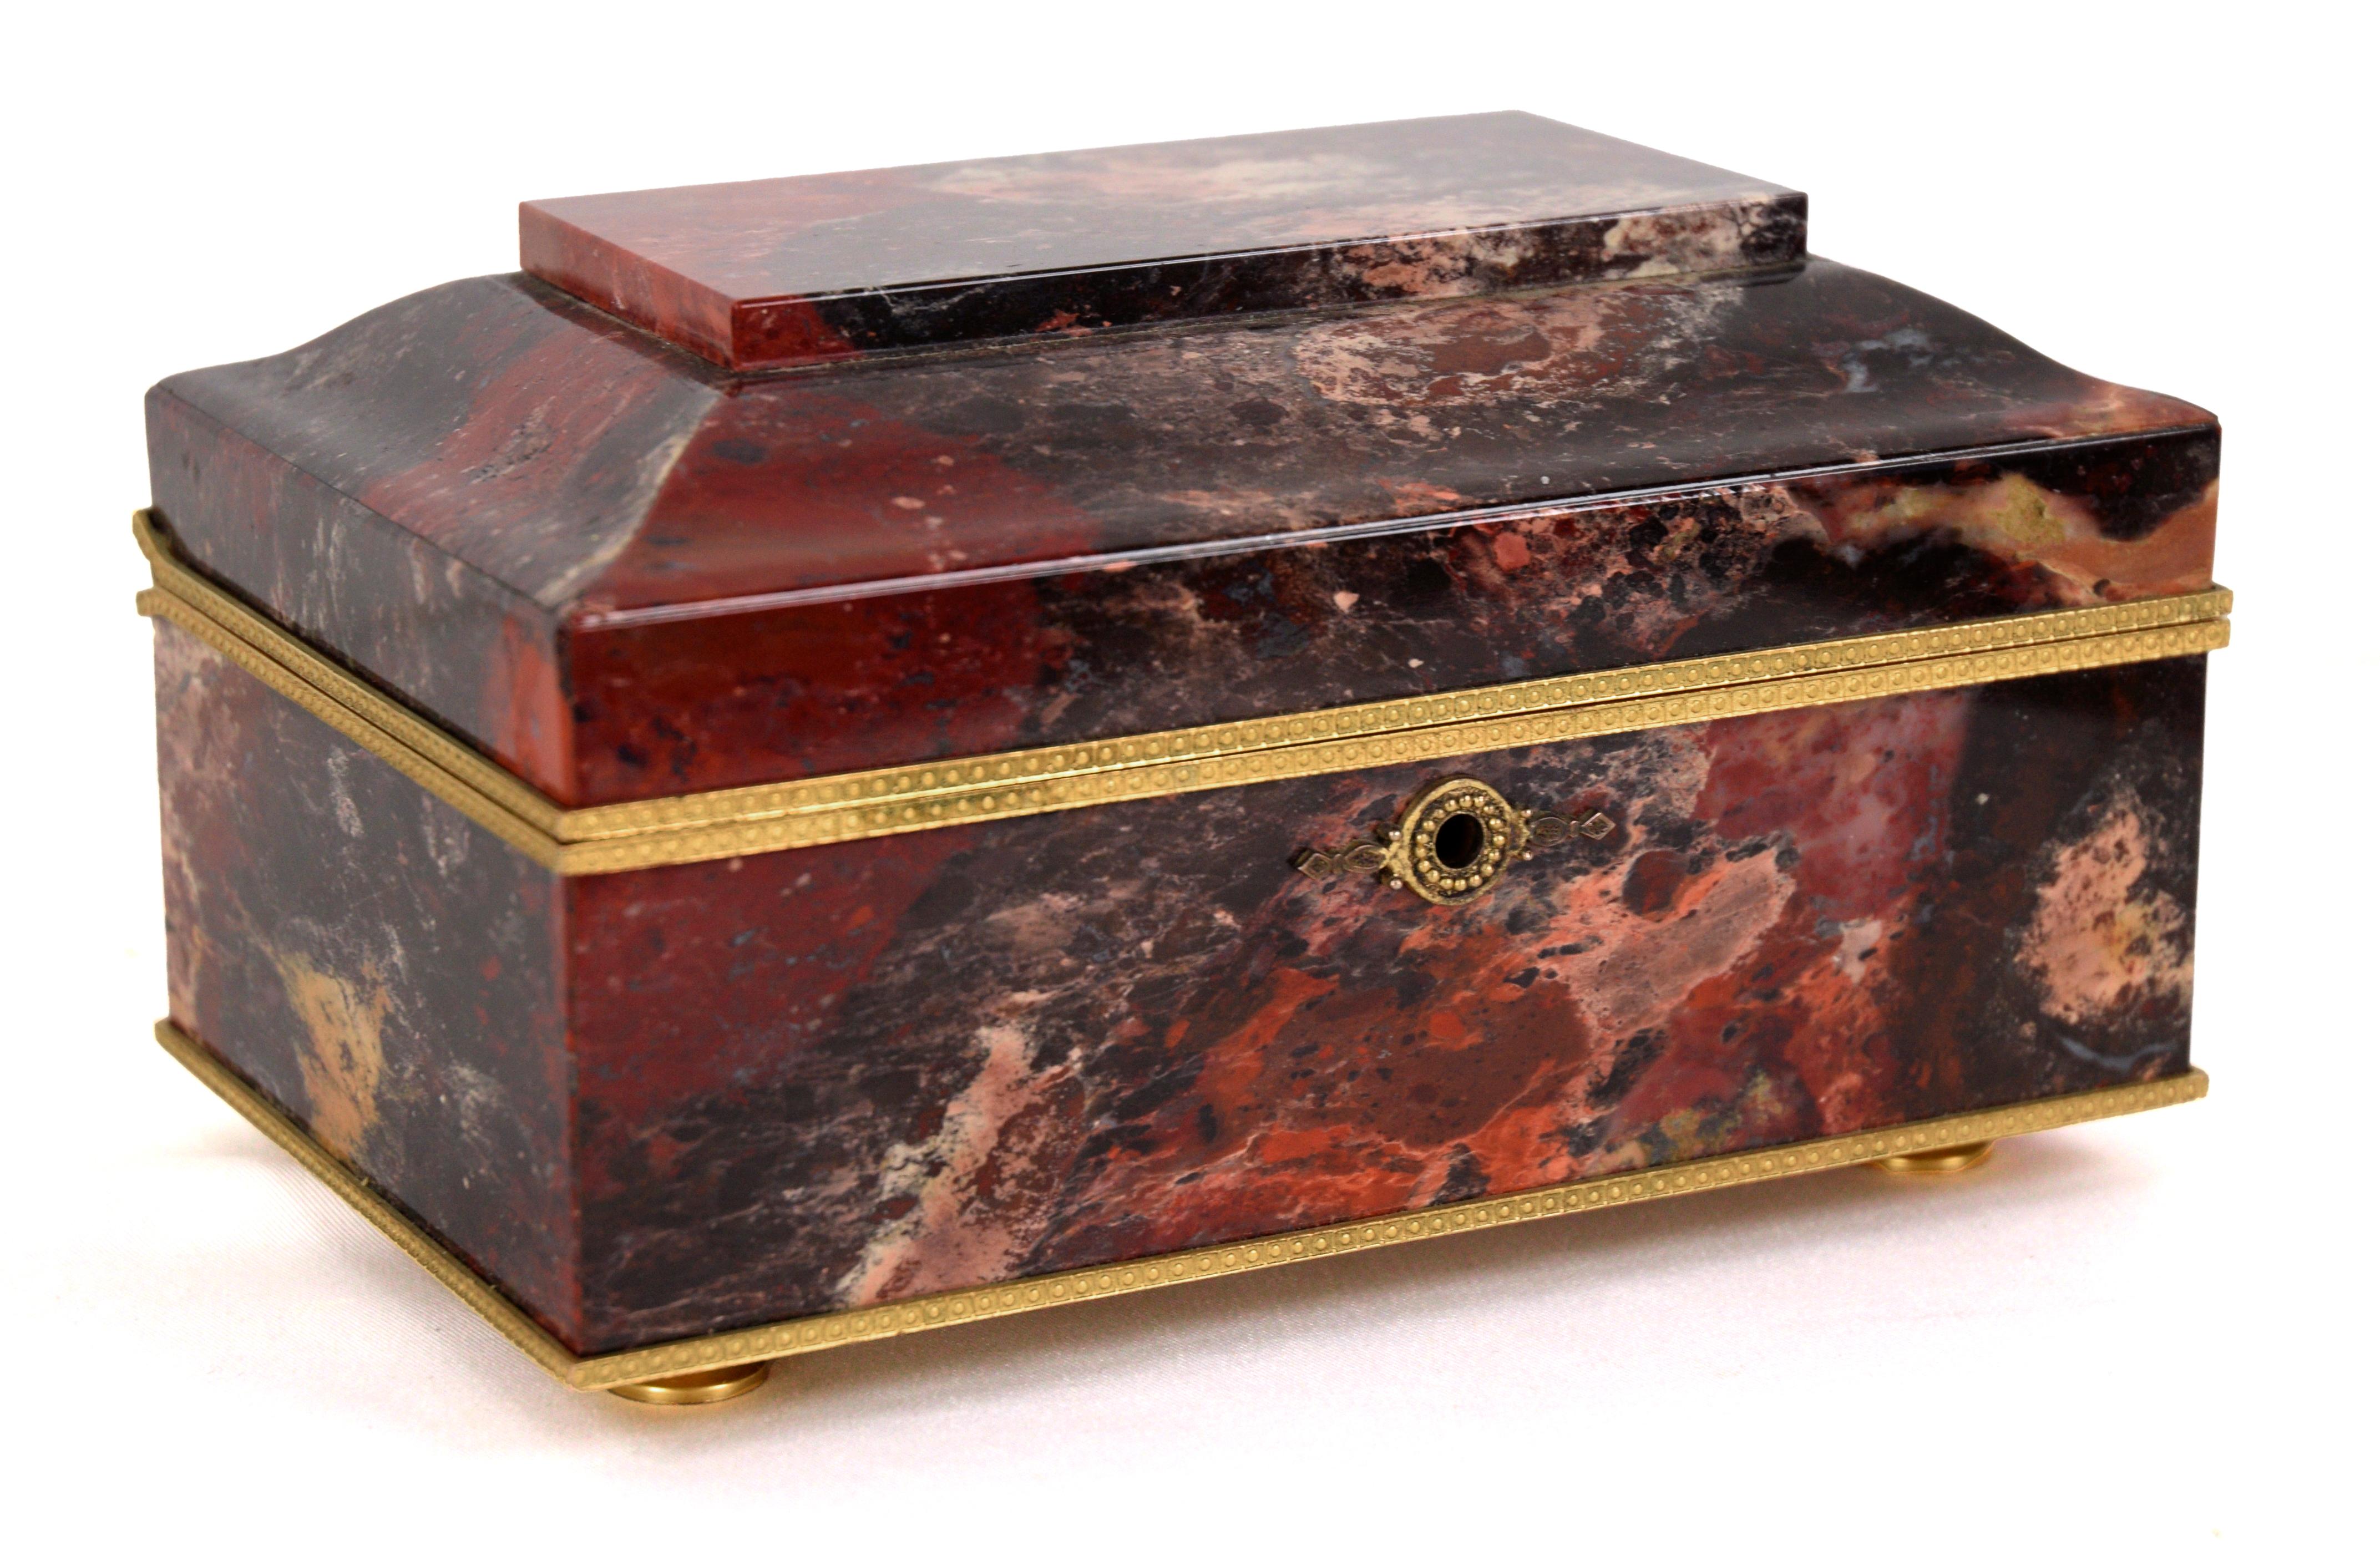 Boîte à bijoux française en agate et bronze doré, en forme de coffret en pierre rouge, noire et rose, avec couvercle à charnière s'ouvrant sur un intérieur tapissé de velours, ainsi qu'une clé cloutée de rubis, 3.5 